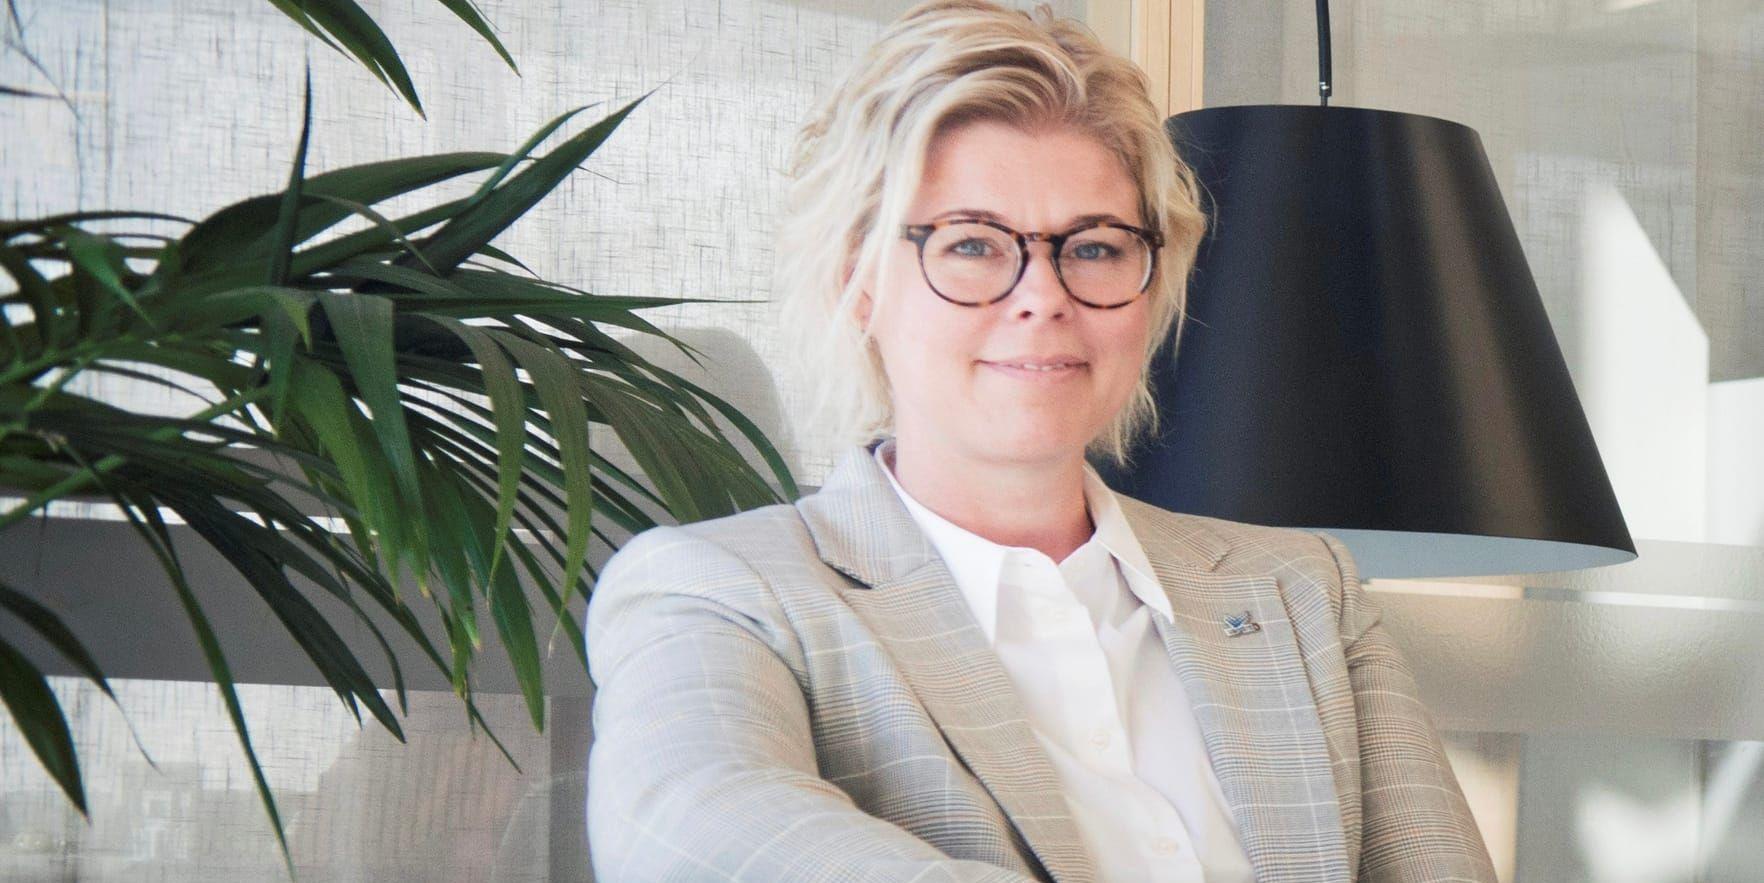 Ann-Charlotte Lilja blir ny kommundirektör i Vårgårda. Det beslutade kommunstyrelsen på onsdagen.